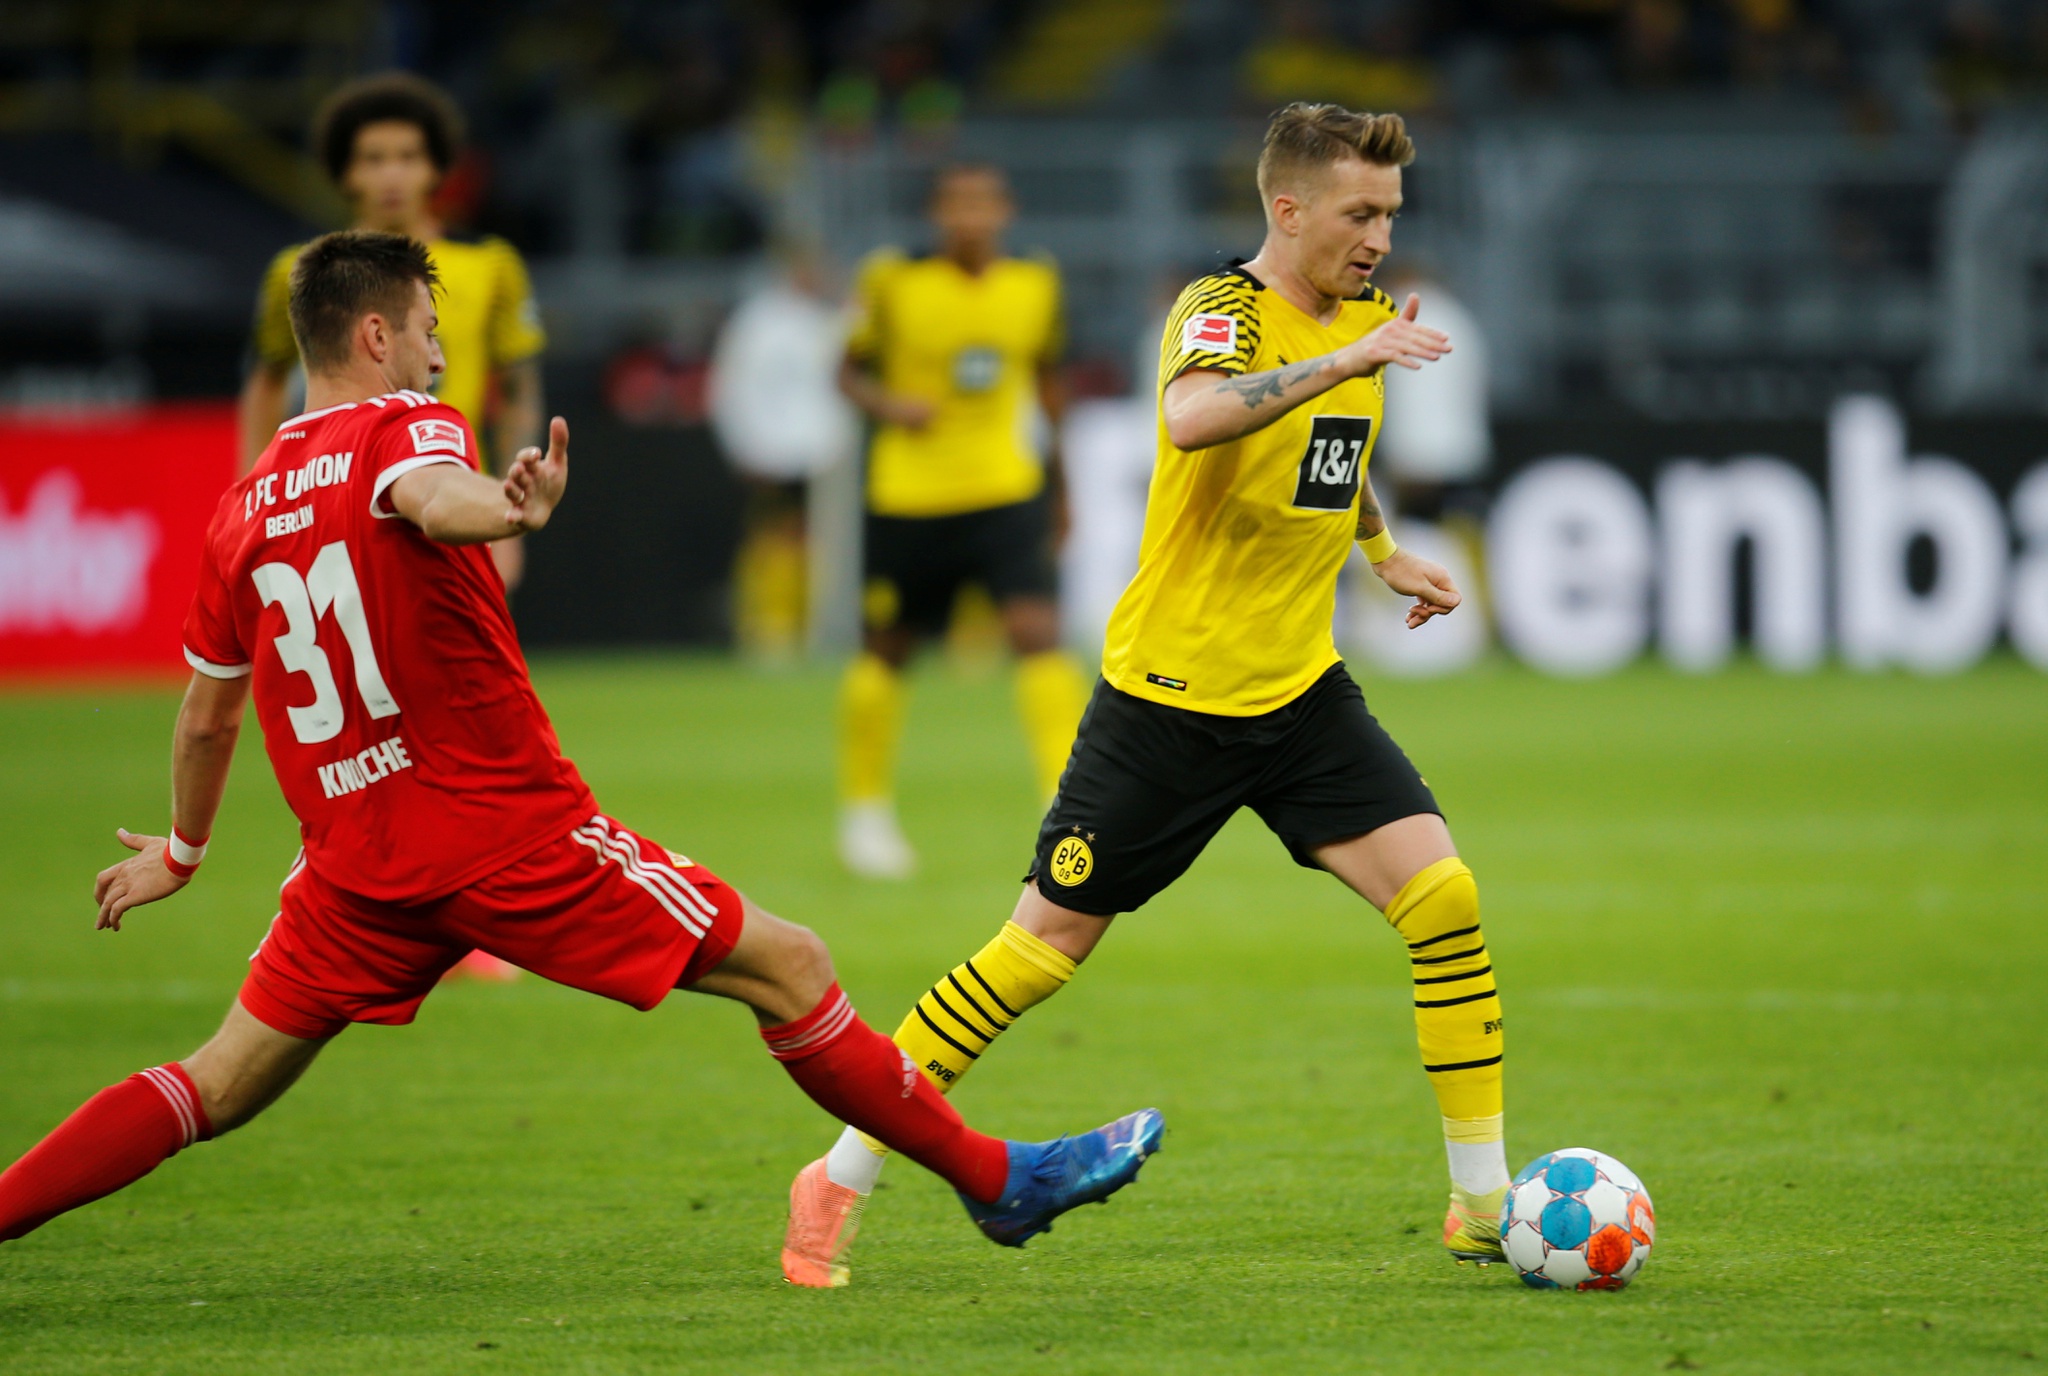 Dortmund quyết tâm giành chiến thắng để đeo bám tốp đầu